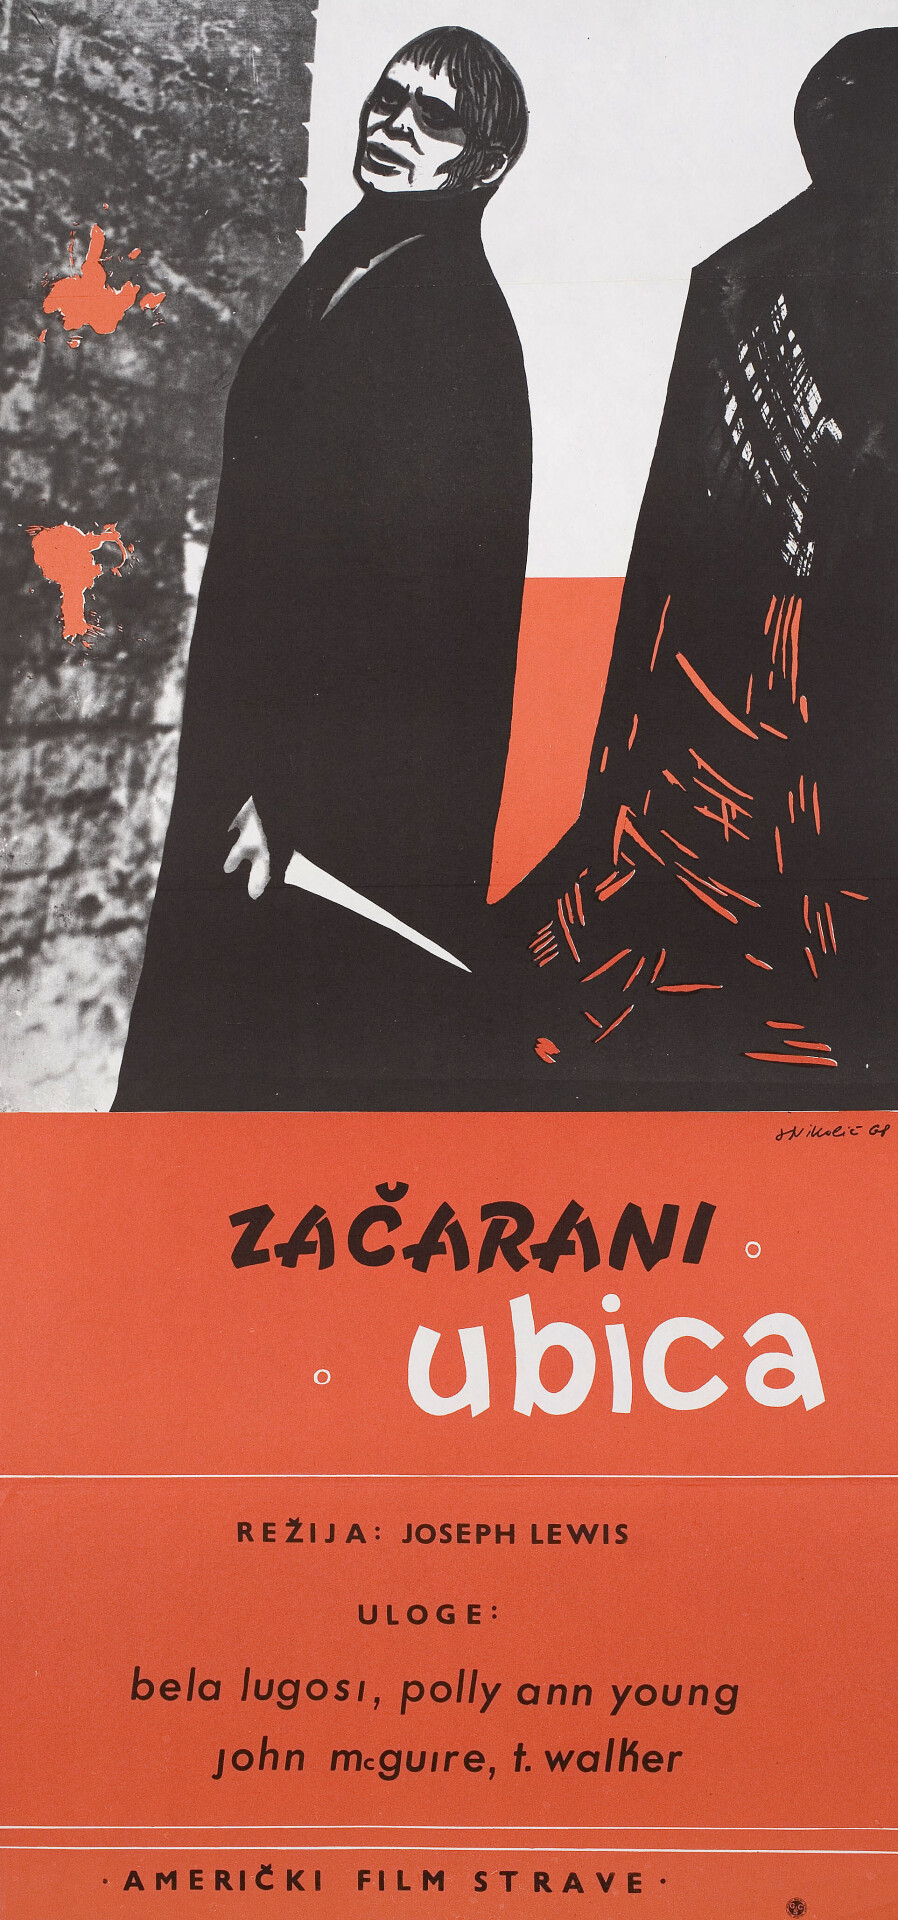 Невидимый призрак (Invisible Ghost, 1941), режиссёр Джозеф Х. Льюис, югославский постер к фильму, автор Николич (ужасы, 1968 год)